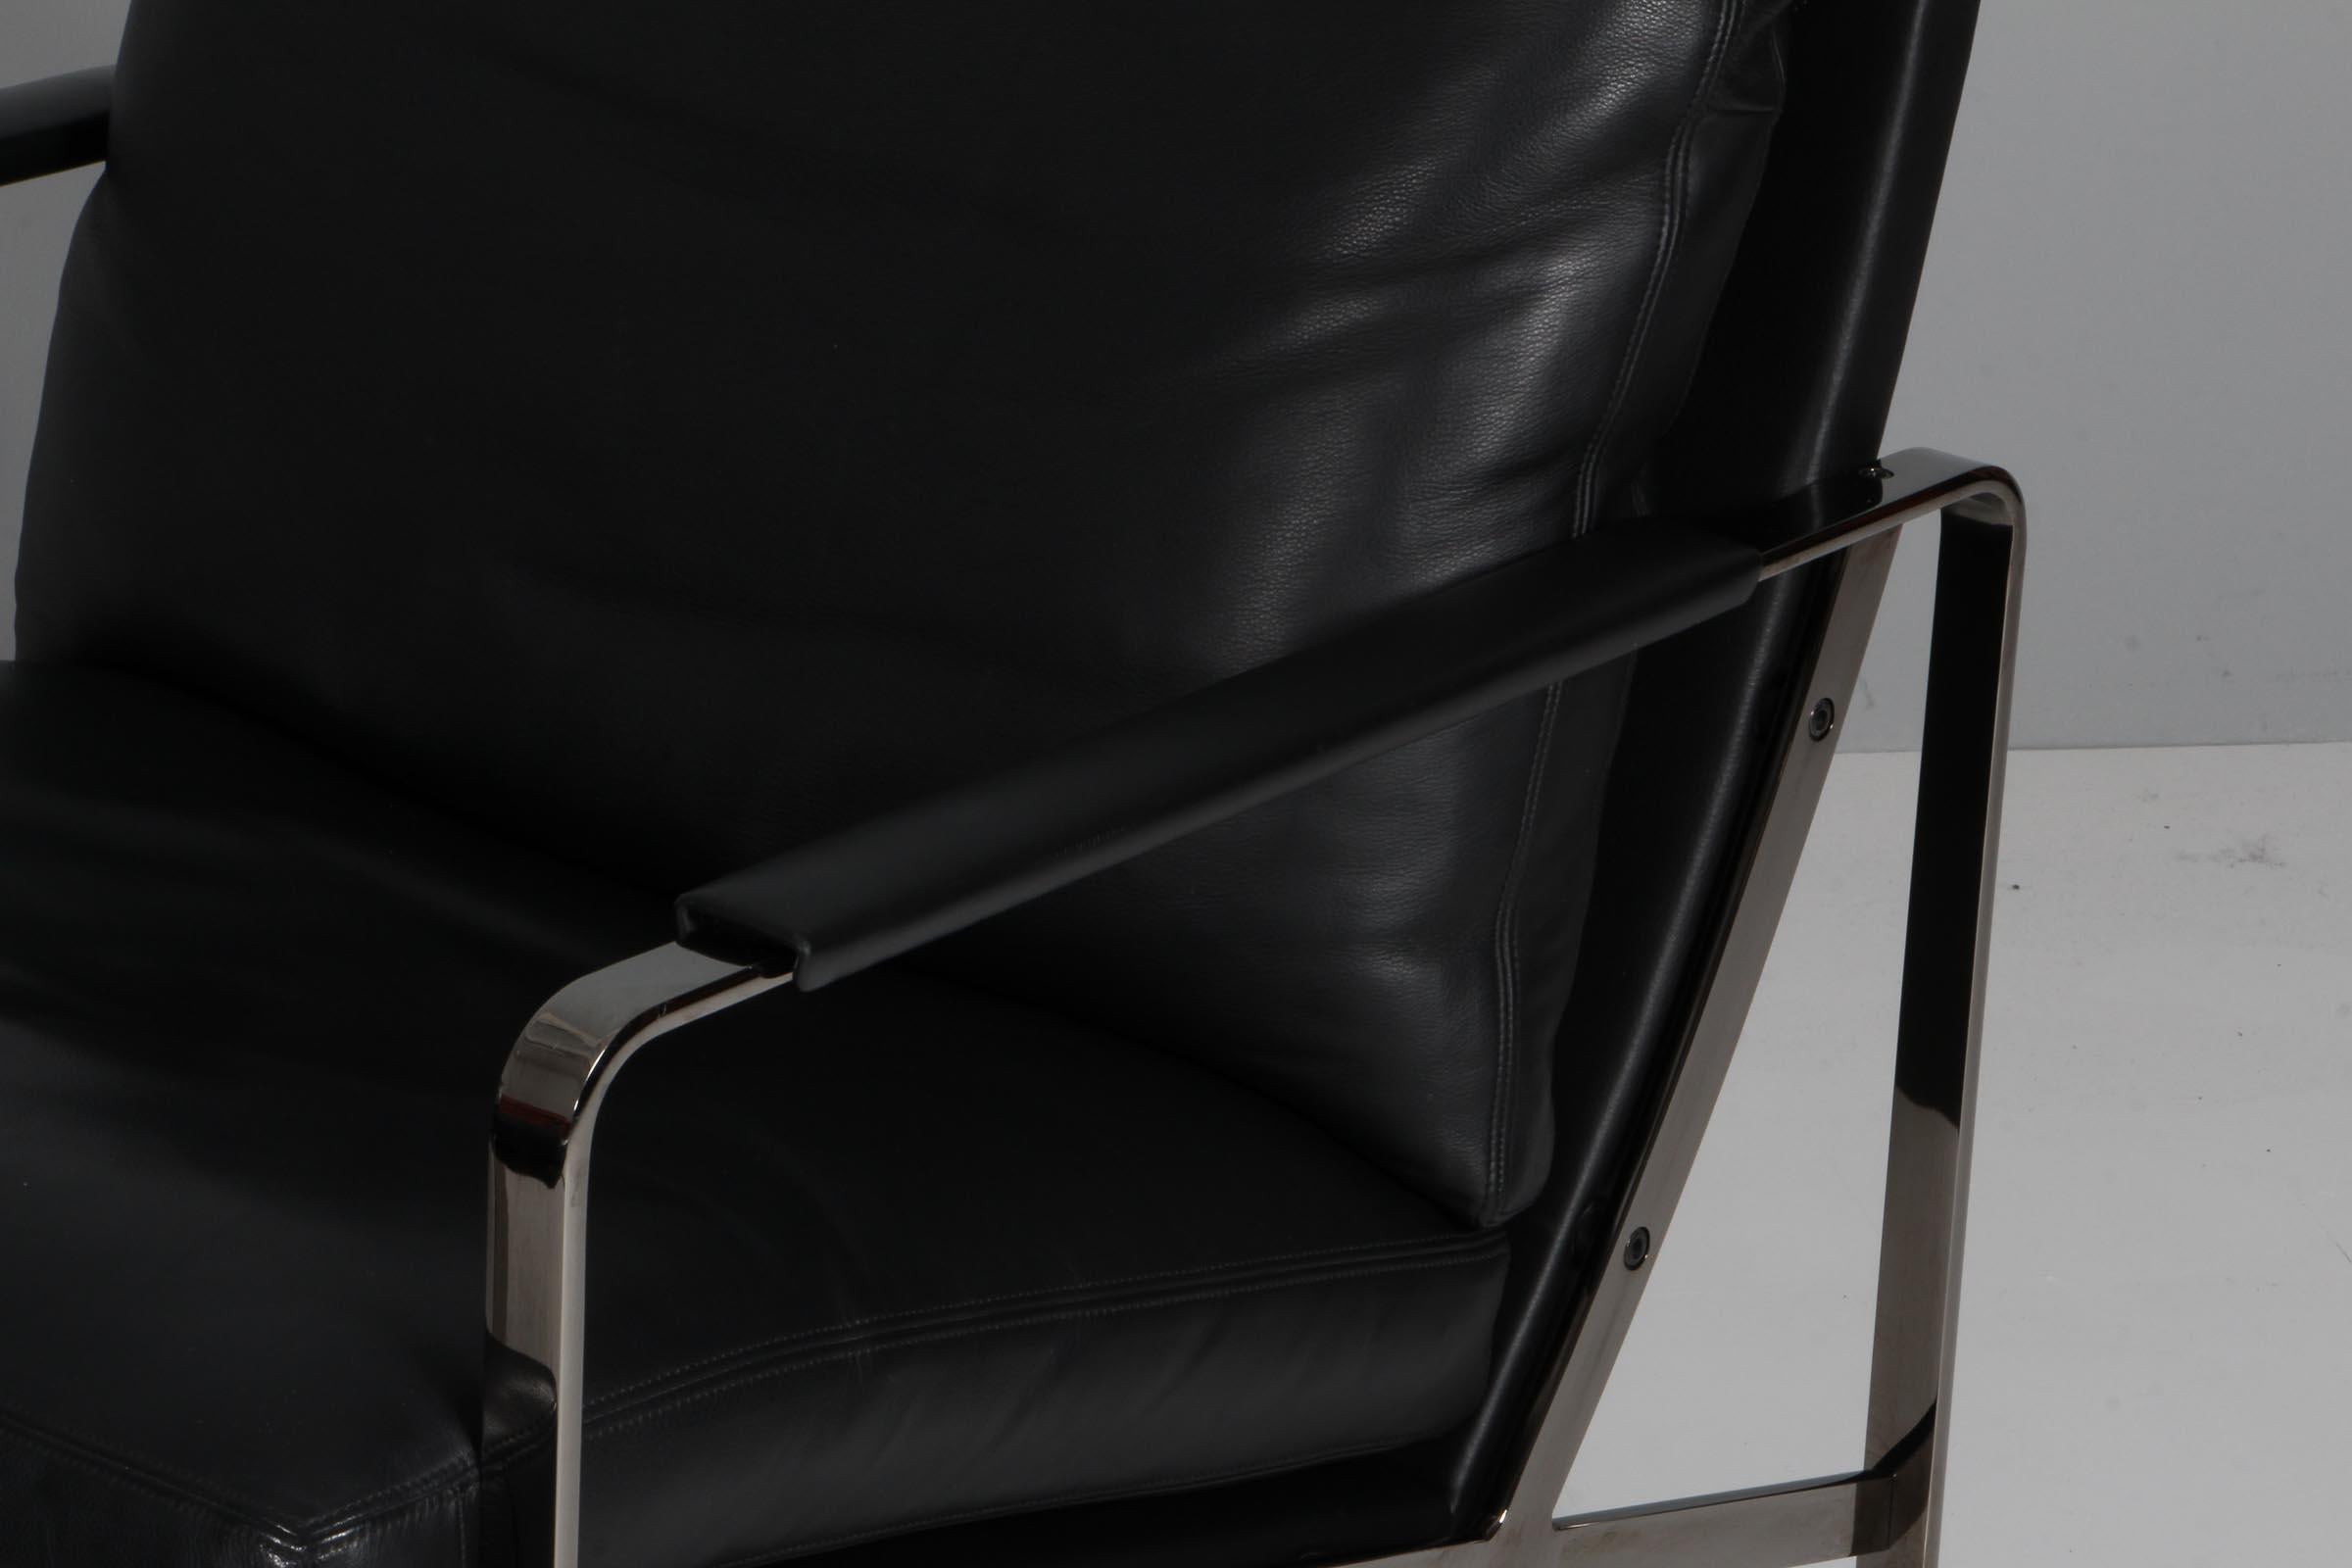 Preben Fabricius Loungesessel in schwarzem Anilinleder, original Lederbezug.

Gestell aus dunkel verchromtem Stahl.

Modell 710, hergestellt von Walter Knoll.